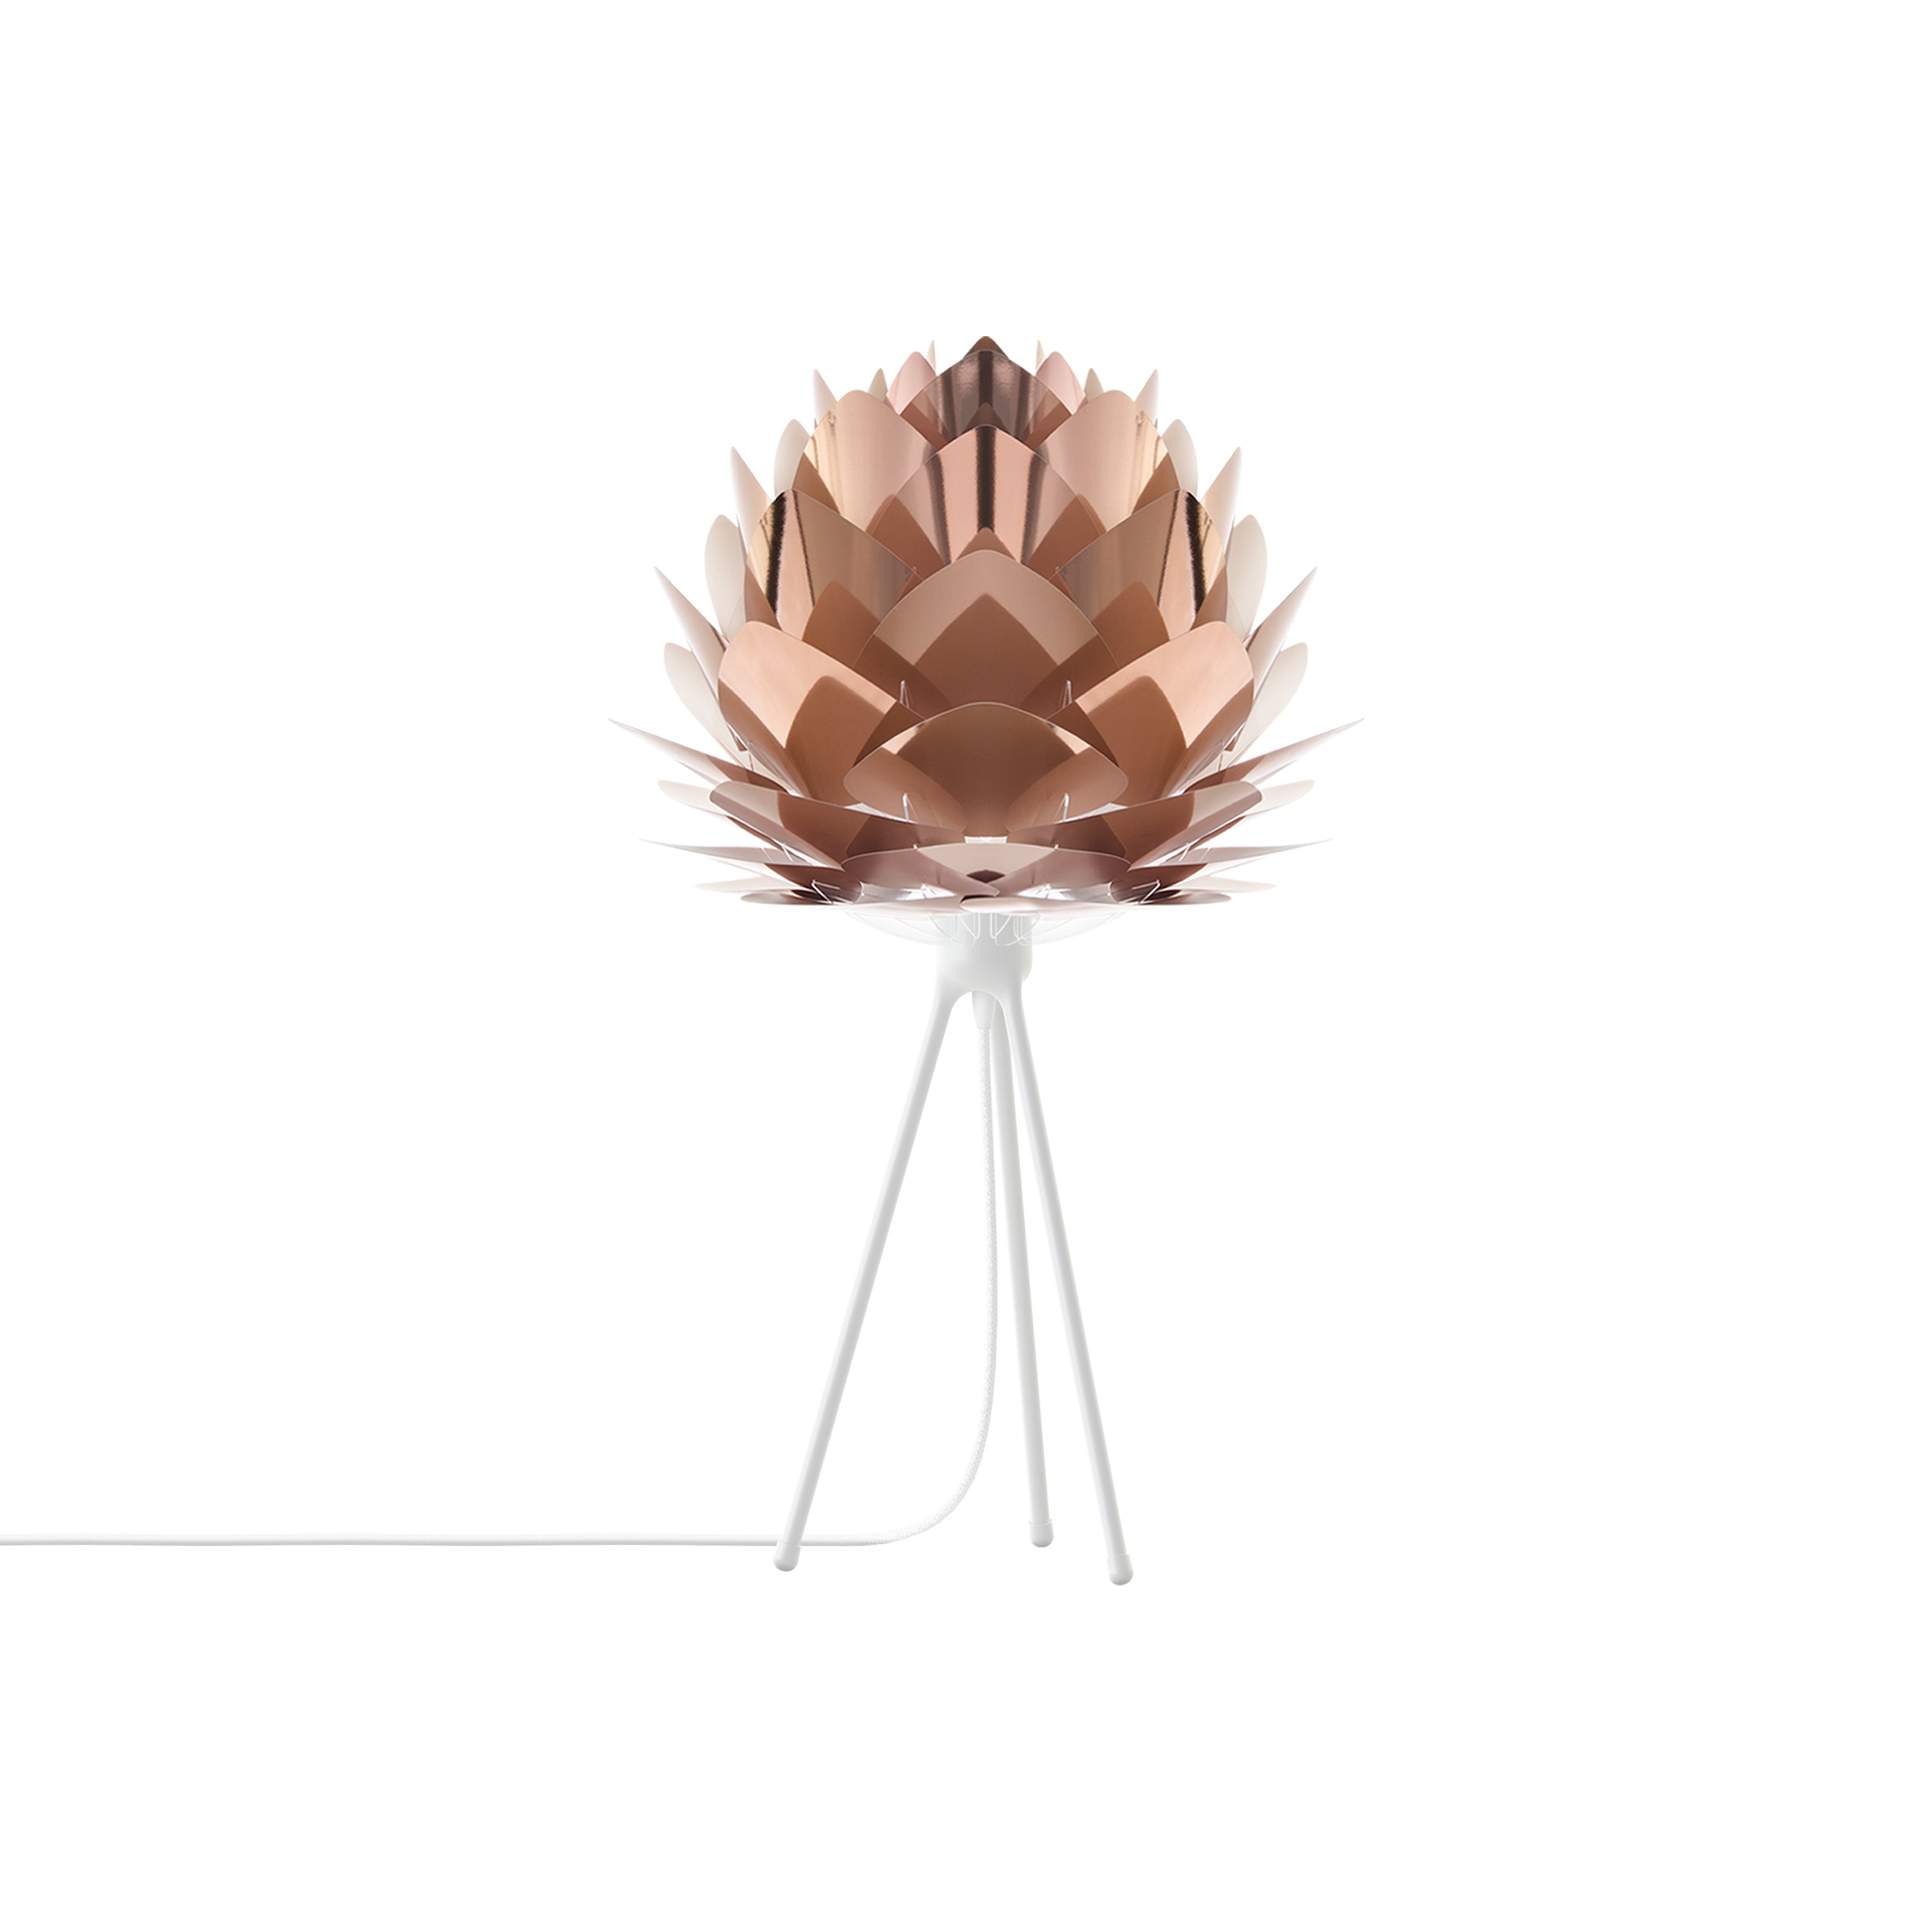 Silvia Tripod Table Lamp: Medium - 17.7